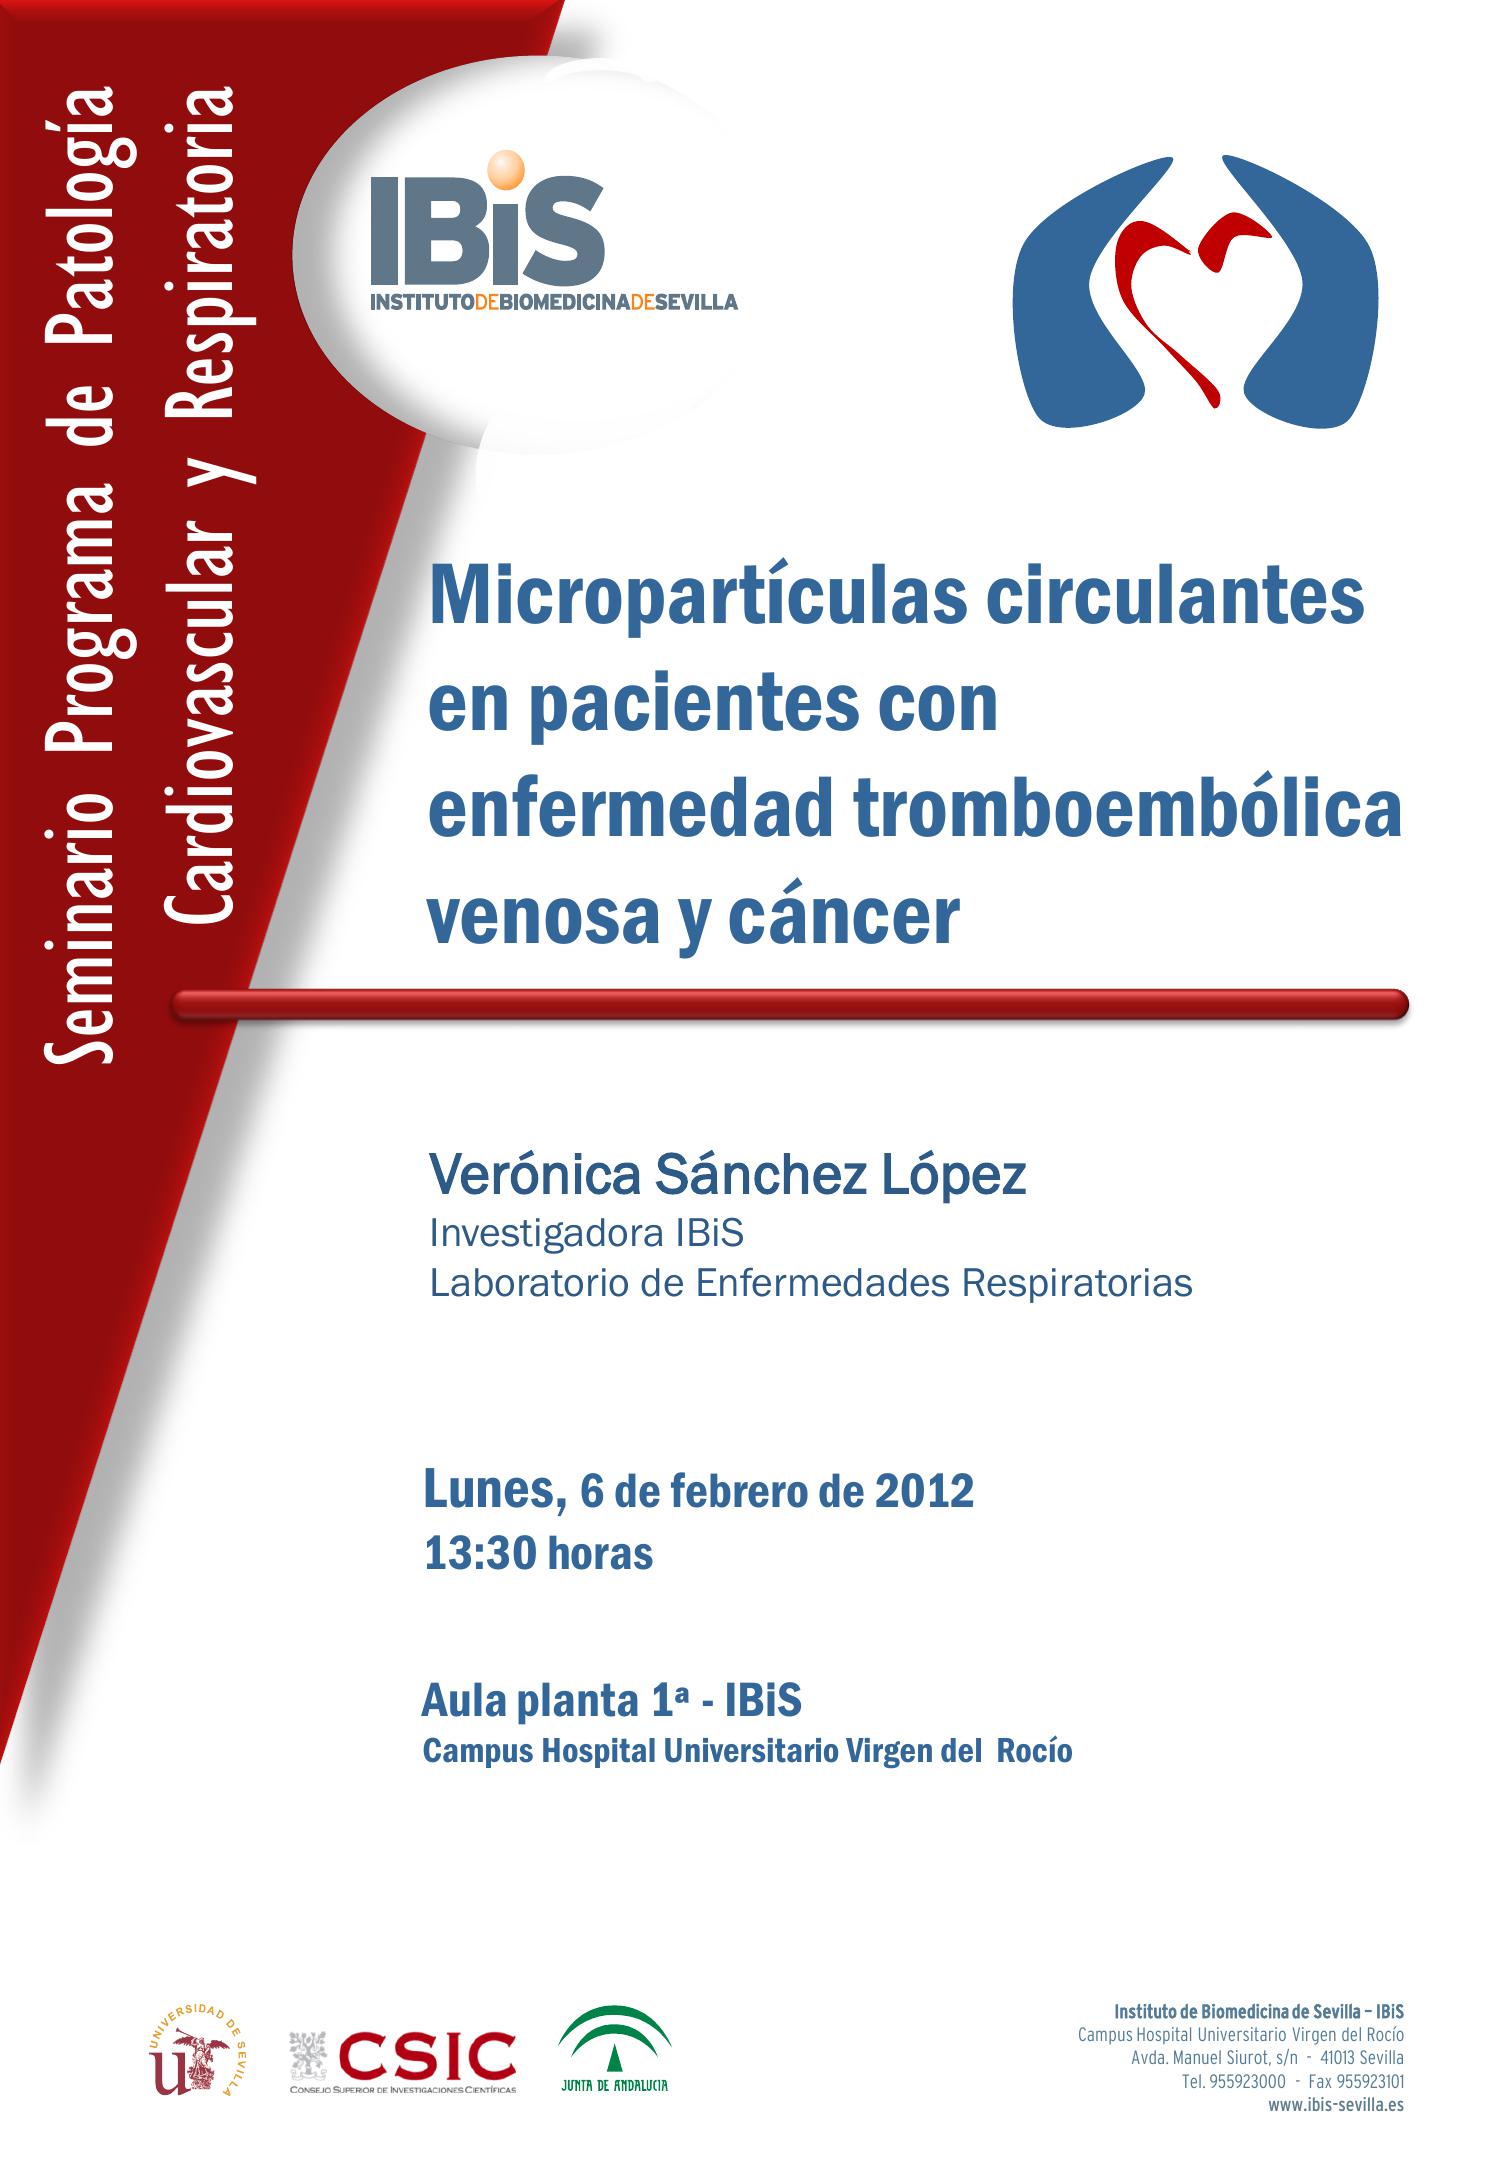 Poster: Micropartículas circulantes en pacientes con enfermedad tromboembólica venosa y cáncer.